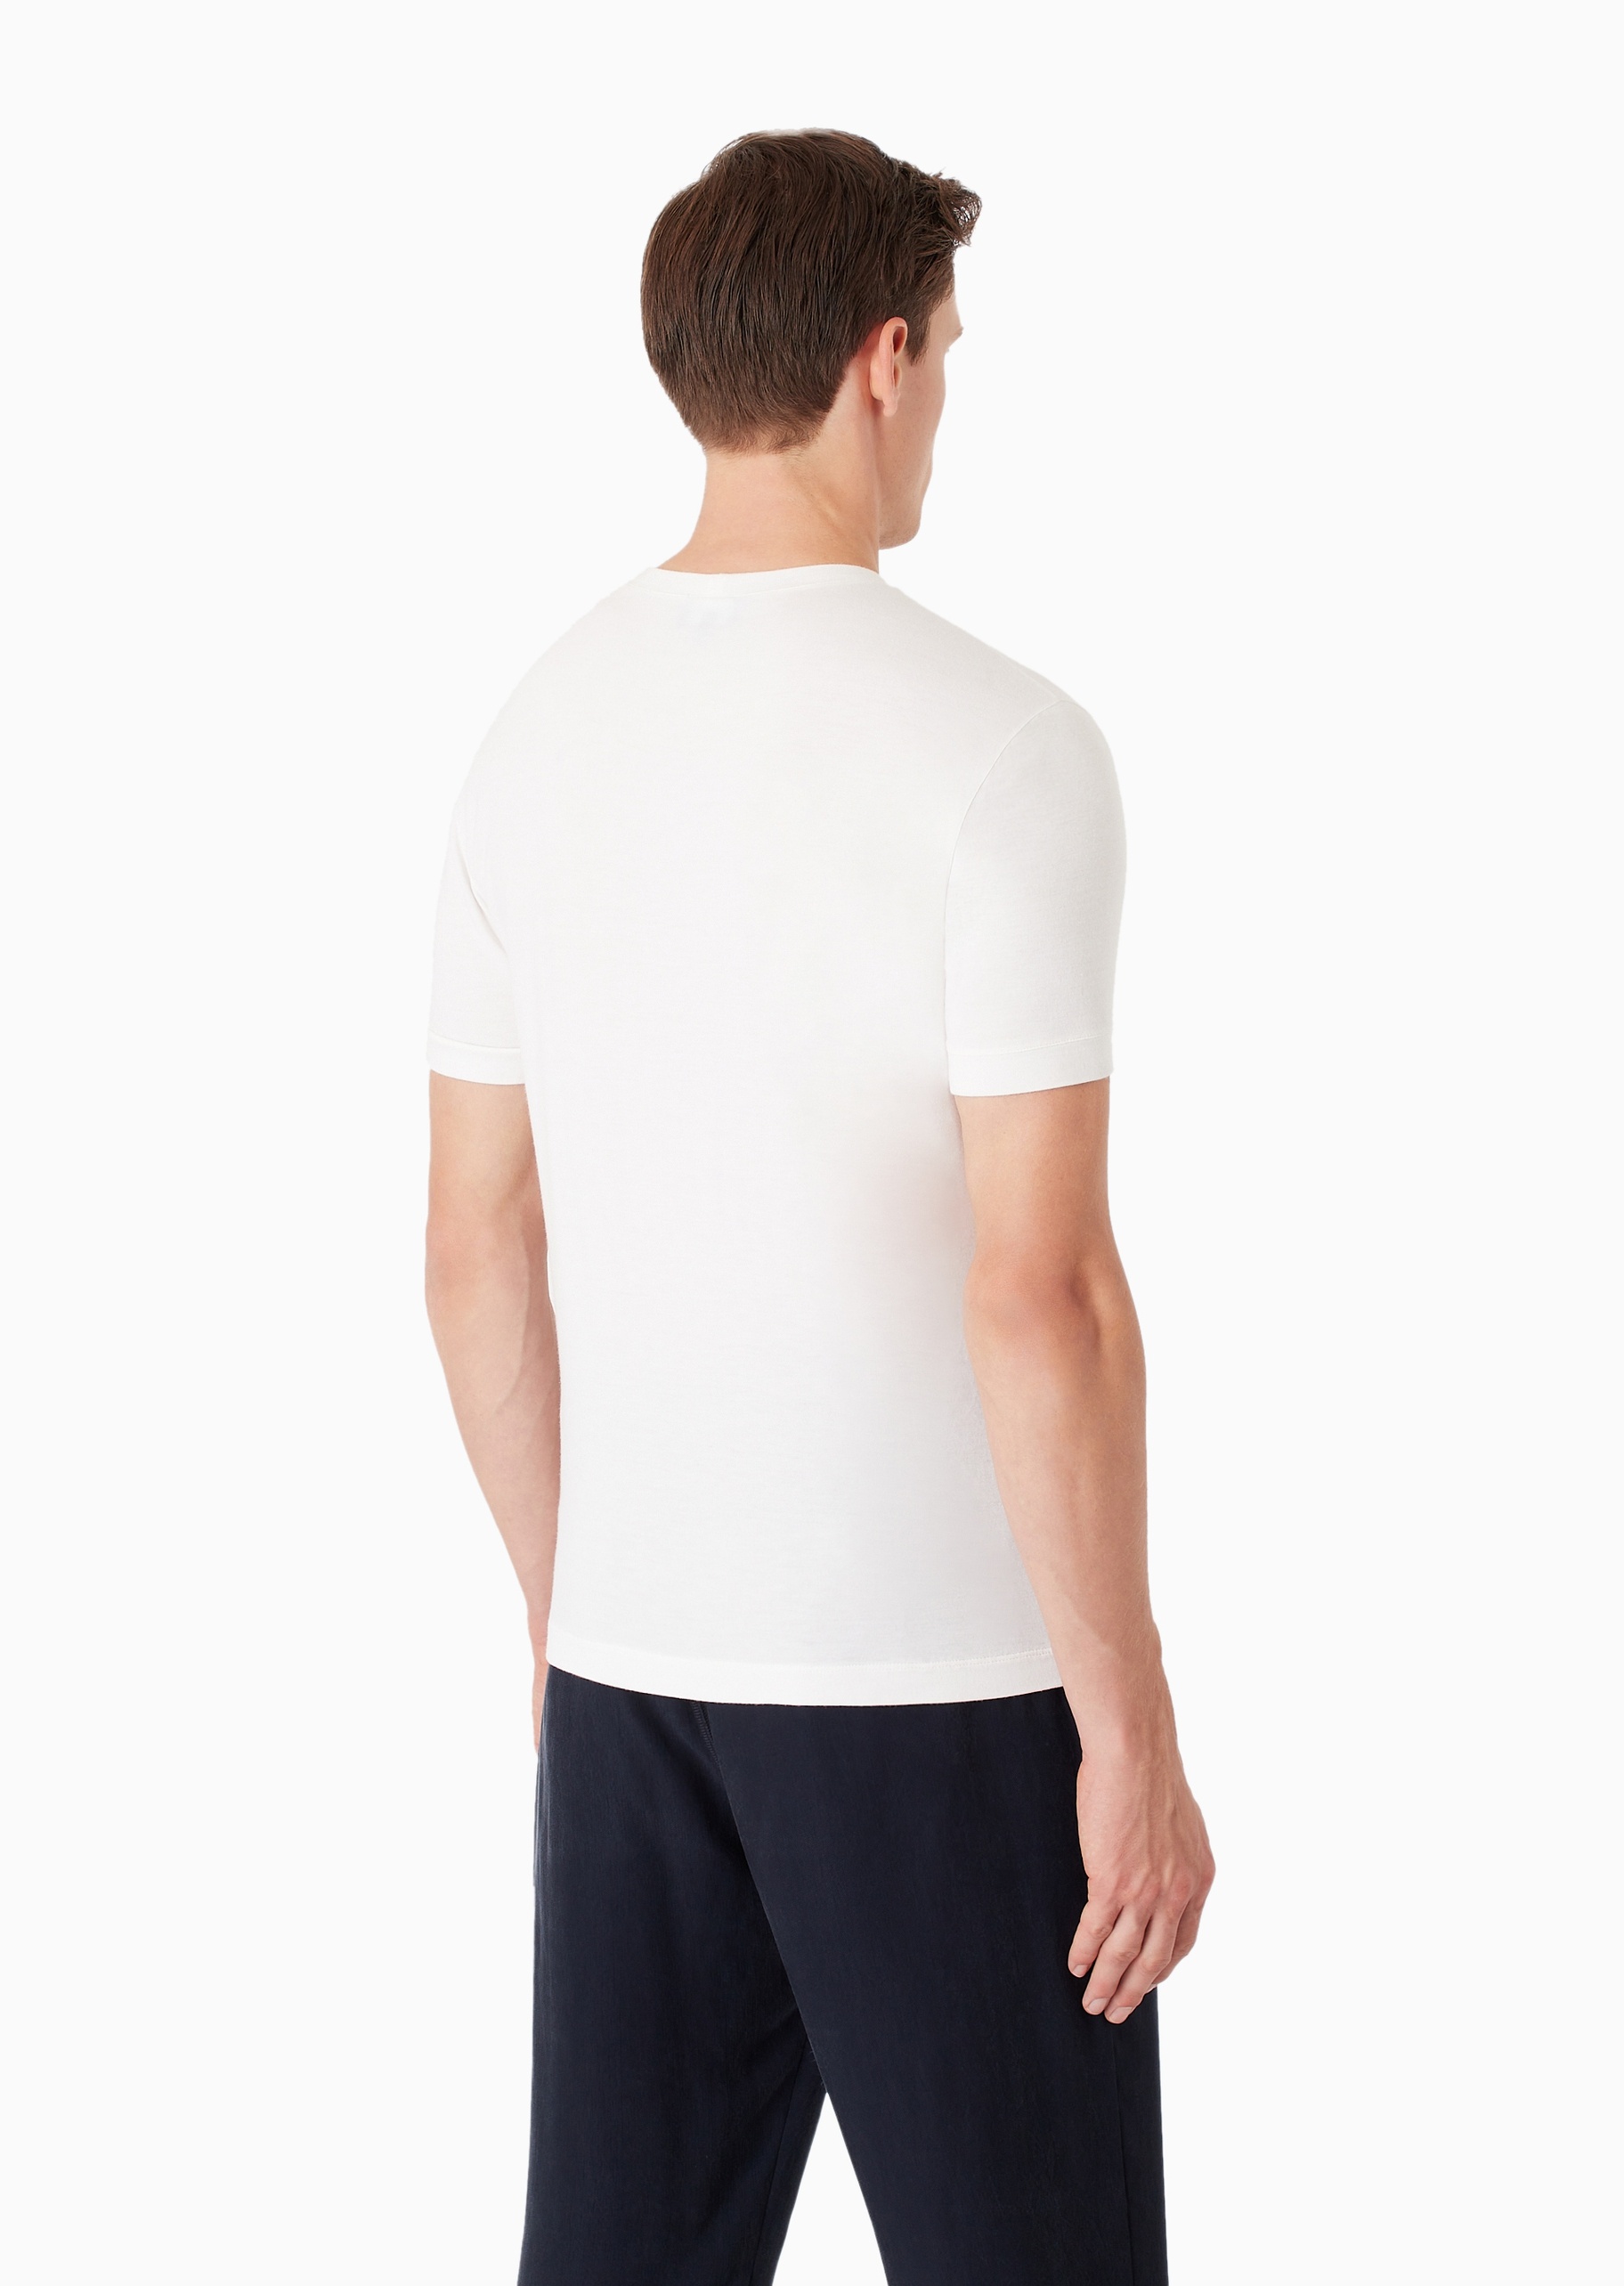 Giorgio Armani 男士弹力合身短袖圆领休闲纯色重磅T恤